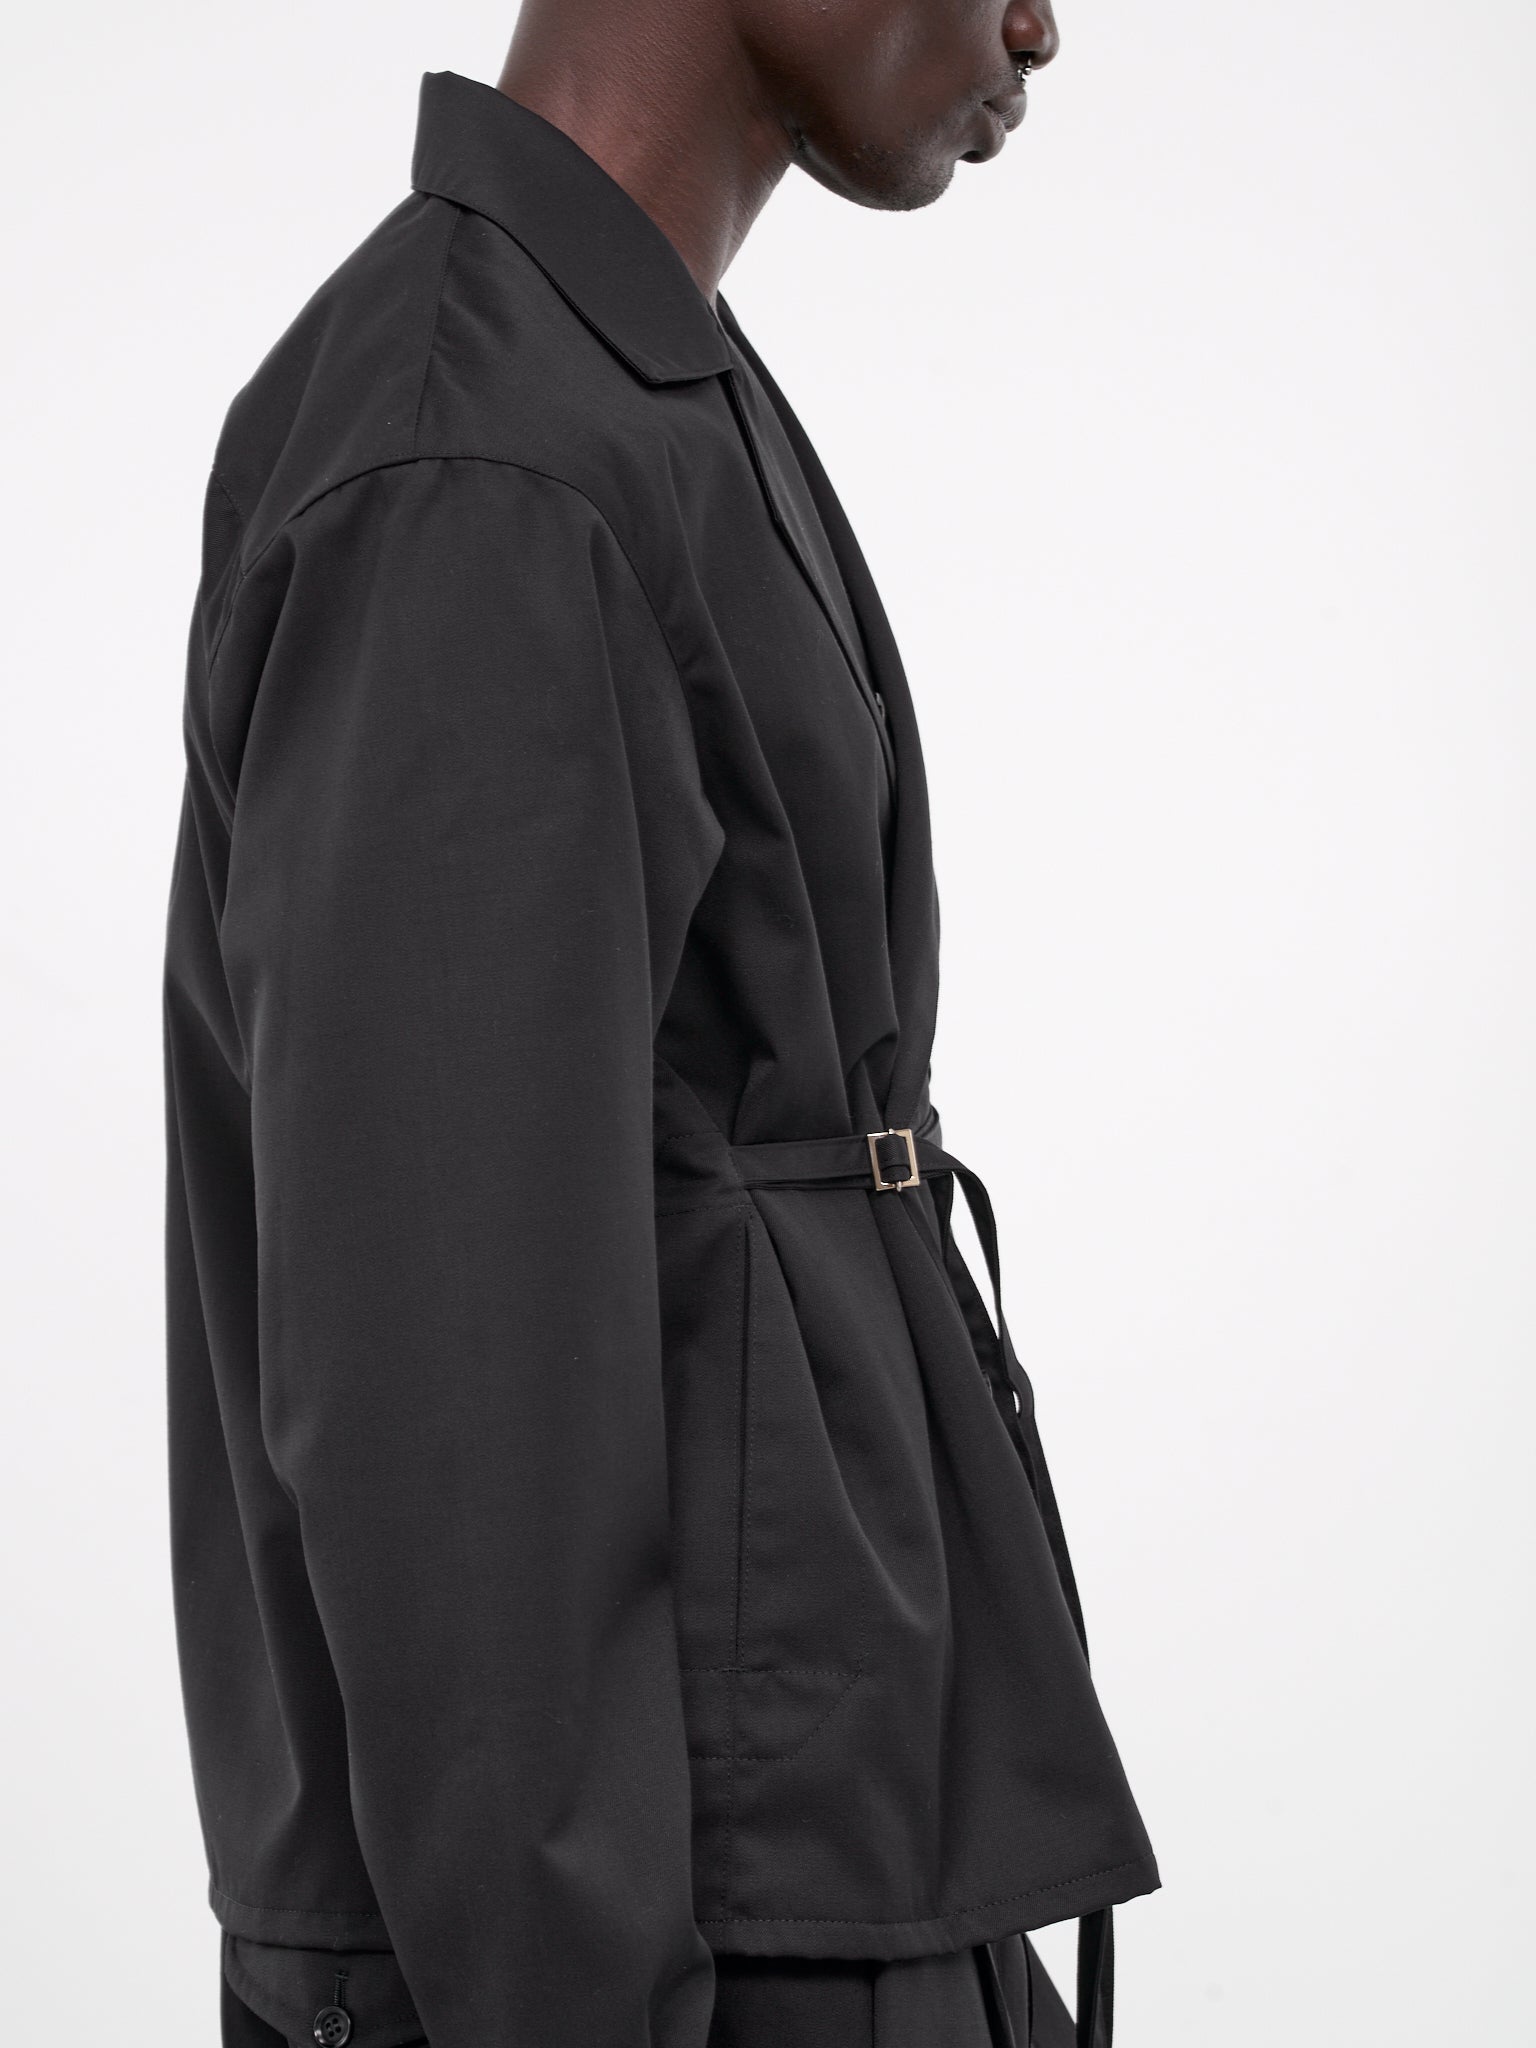 Belted Double-Breasted Jacket (EM-JK-M02-BLACK)